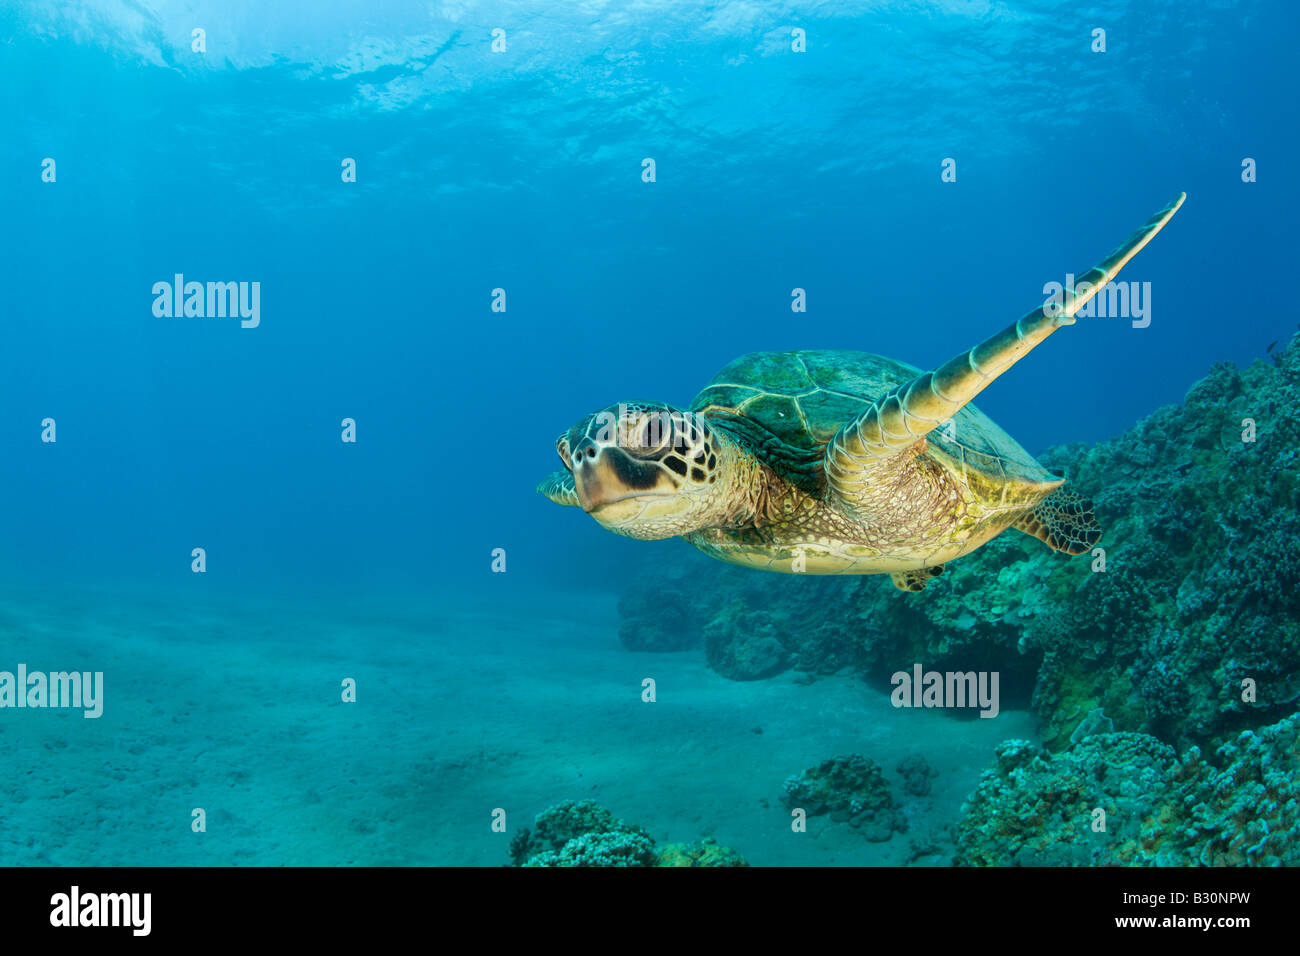 La Tortue verte Chelonia mydas atoll de Bikini des Îles Marshall Micronésie Océan Pacifique Banque D'Images